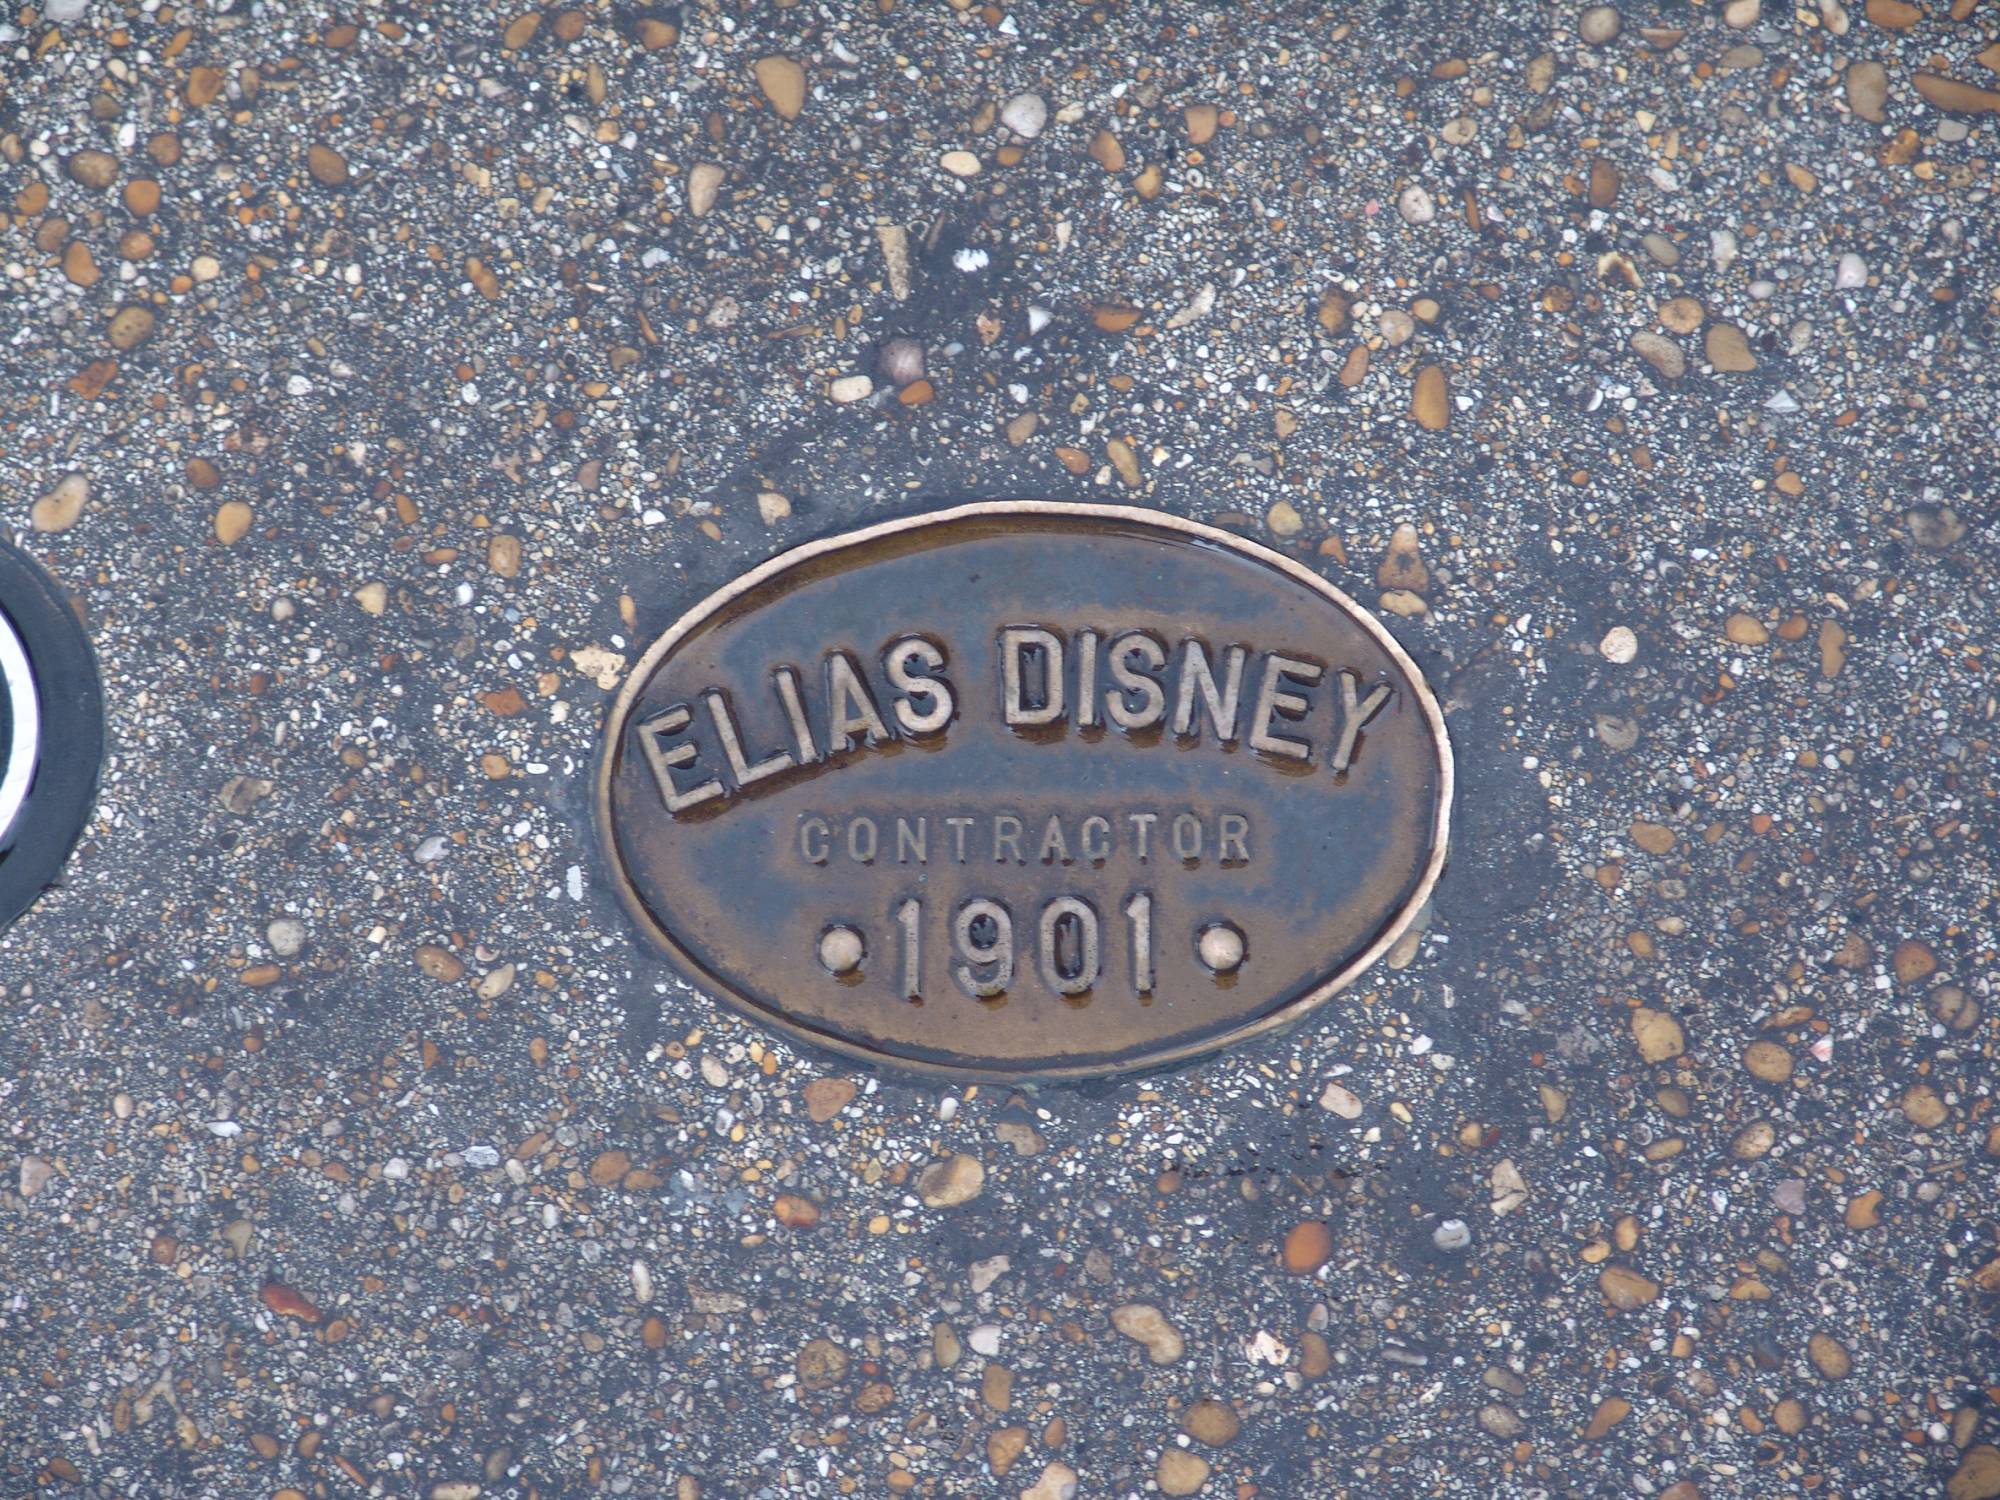 Disneyland Paris - Elias Disney contractor cover